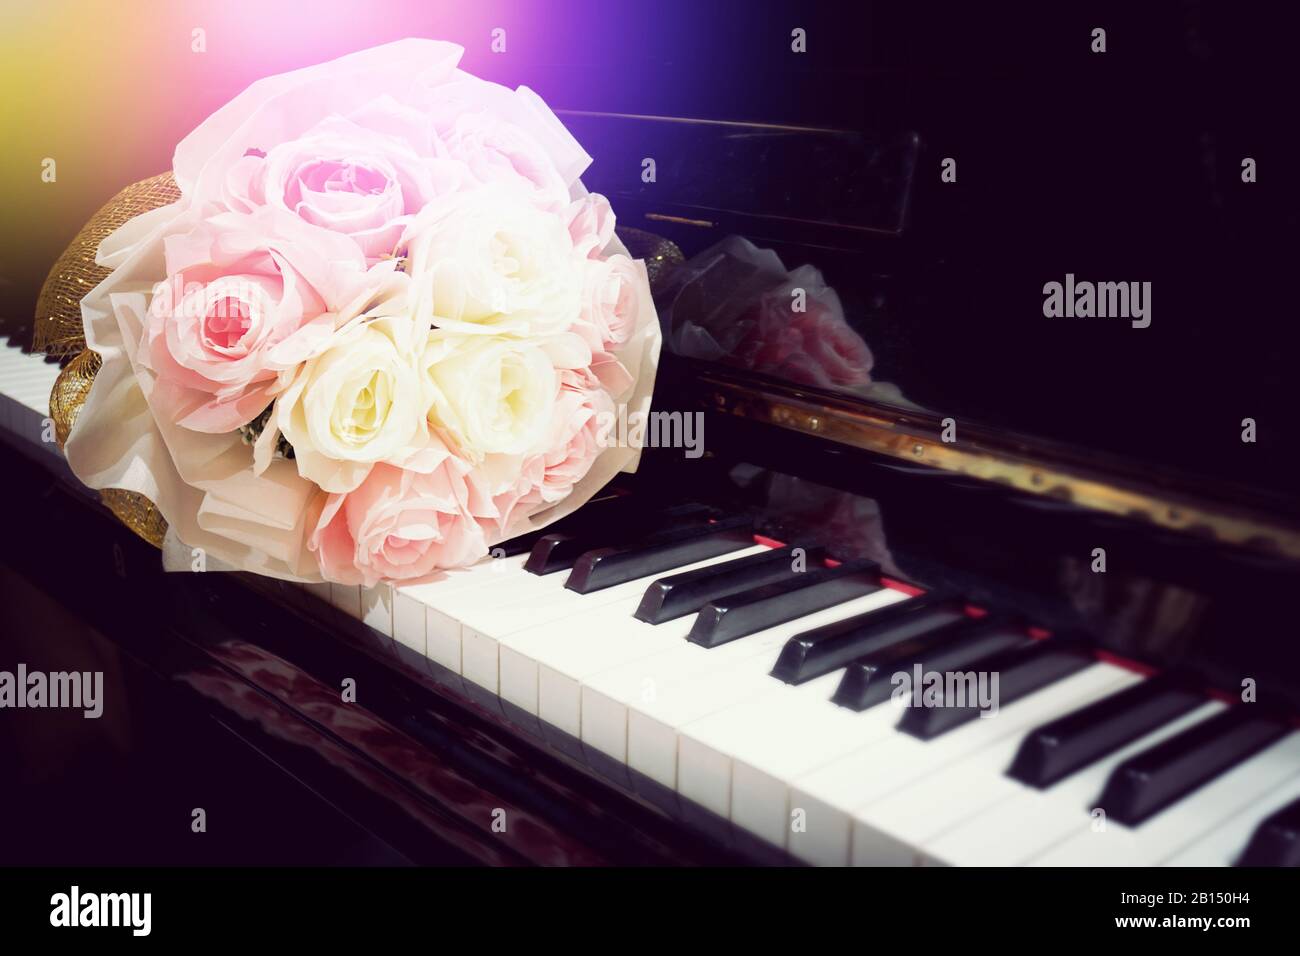 Fiore di rosa al bouquet sulla tastiera del pianoforte con lieve bagliore in concerto. Immagine con messa a fuoco selettiva. Sfondo musicale con tonalità di colore calde Foto Stock